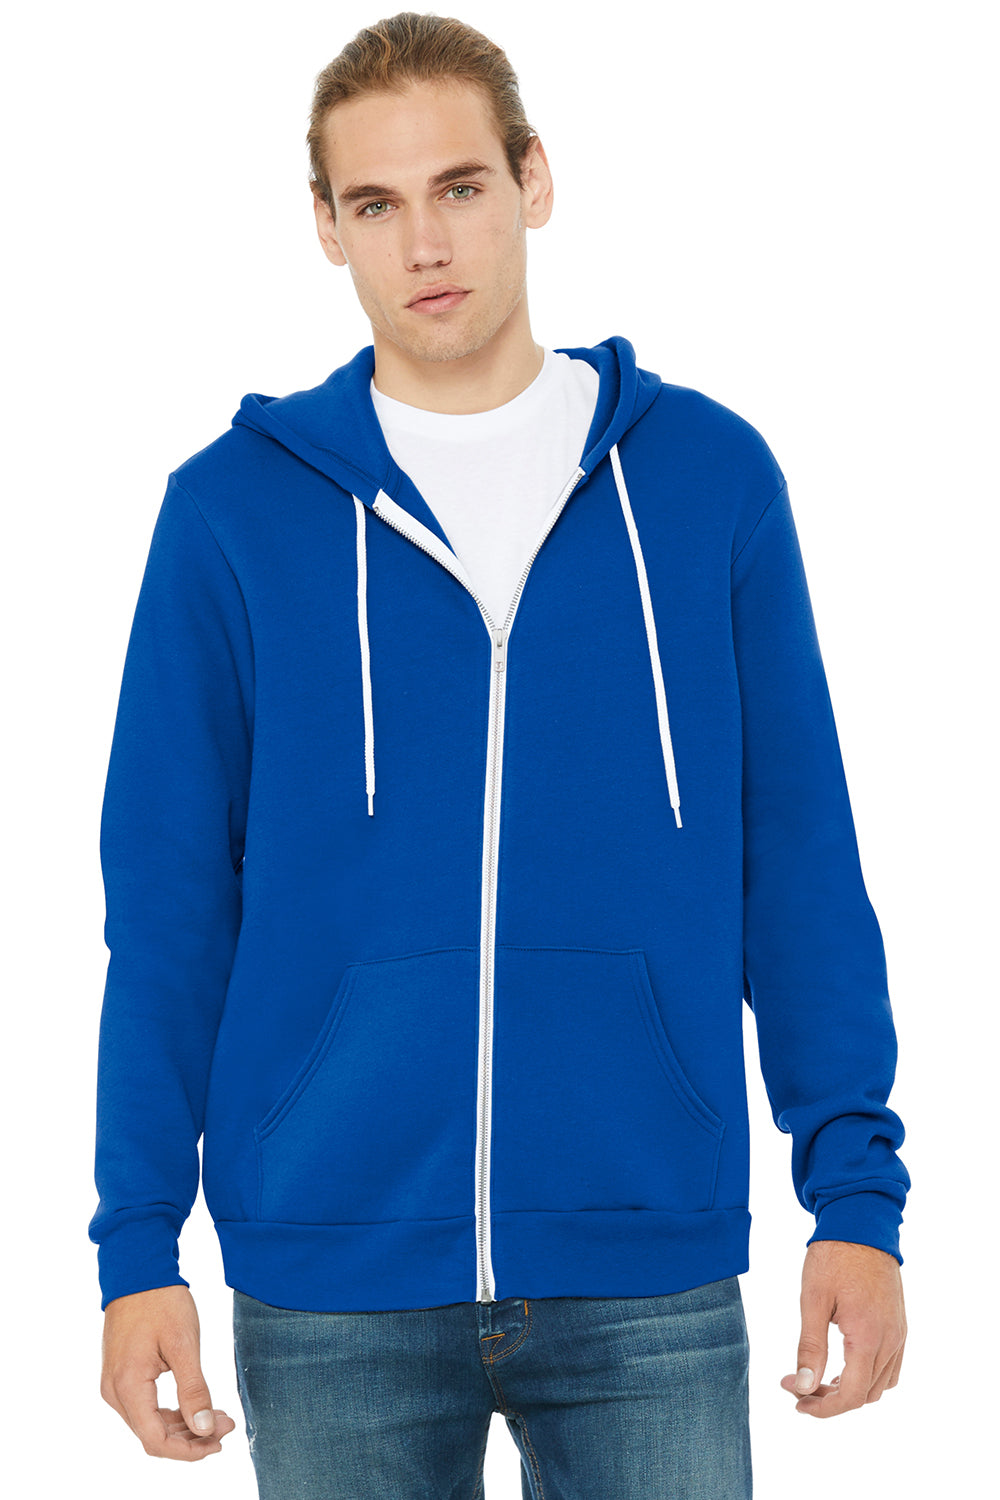 Bella + Canvas BC3739/3739 Mens Fleece Full Zip Hooded Sweatshirt Hoodie True Royal Blue Model Front